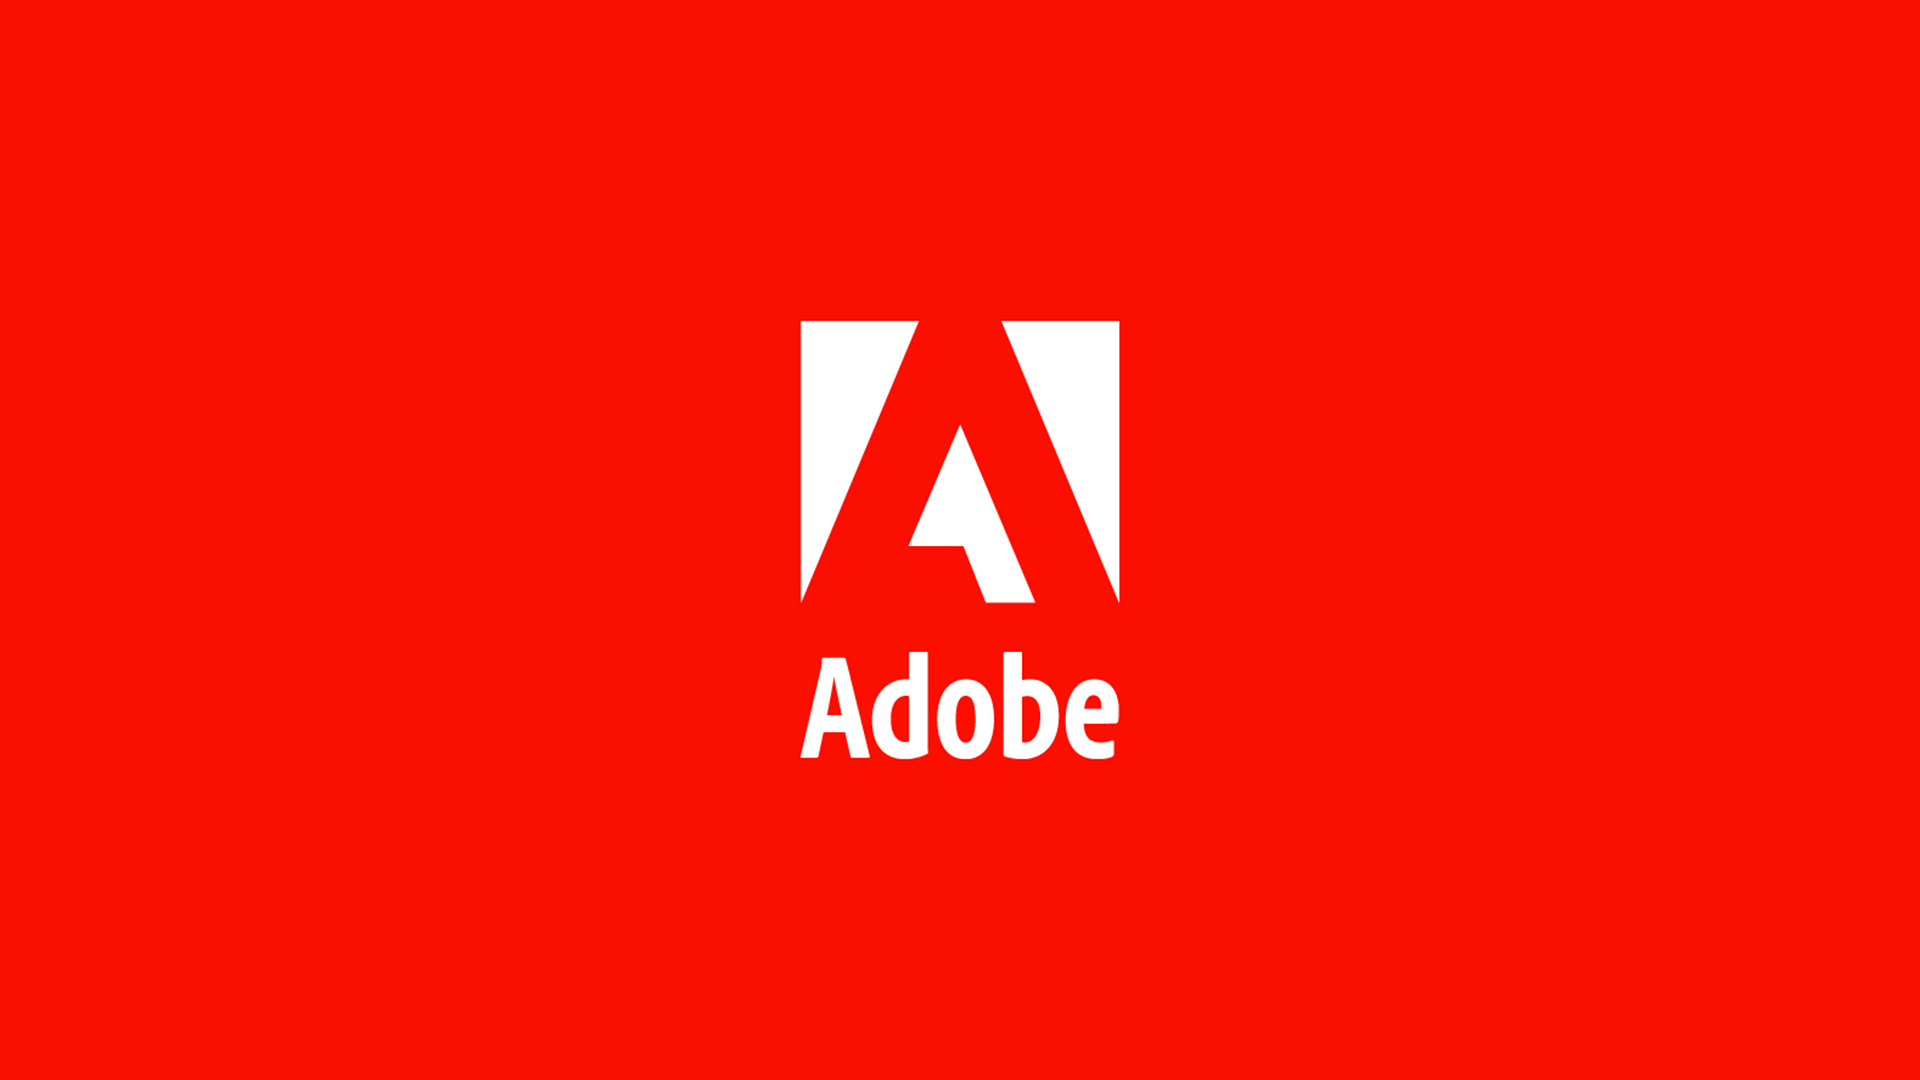 Wallpaper, Adobe, logo 1920x1080